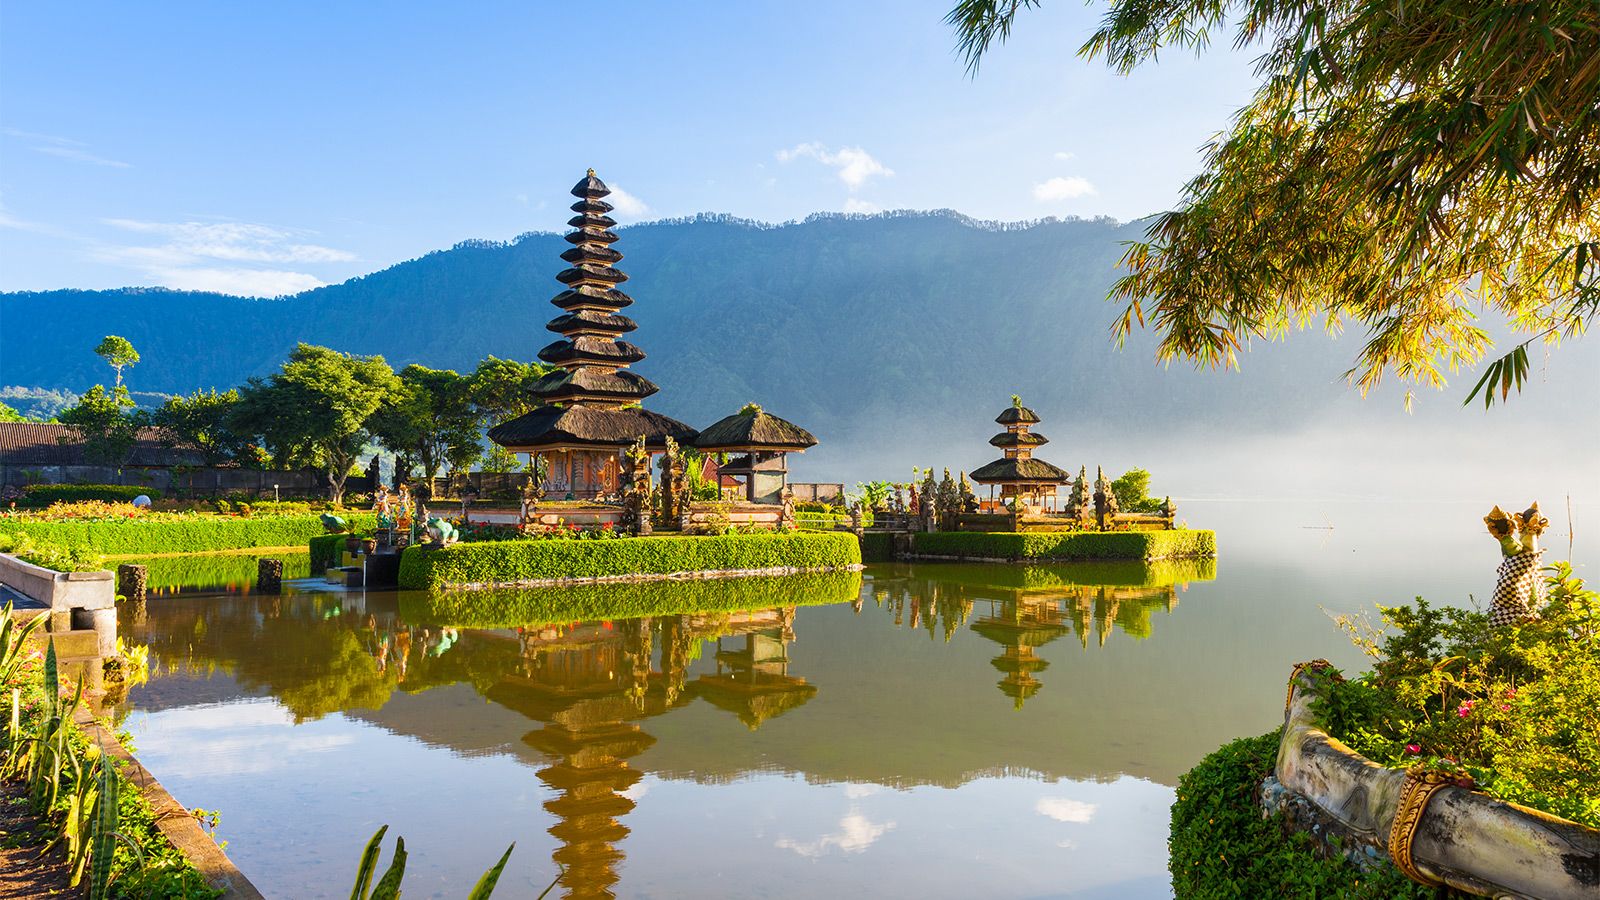 Hơn 30 triệu lượt xem trải nghiệm tại "thiên đường" Bali của nữ du khách, sự thật được tiết lộ khiến nhiều người rùng mình- Ảnh 1.